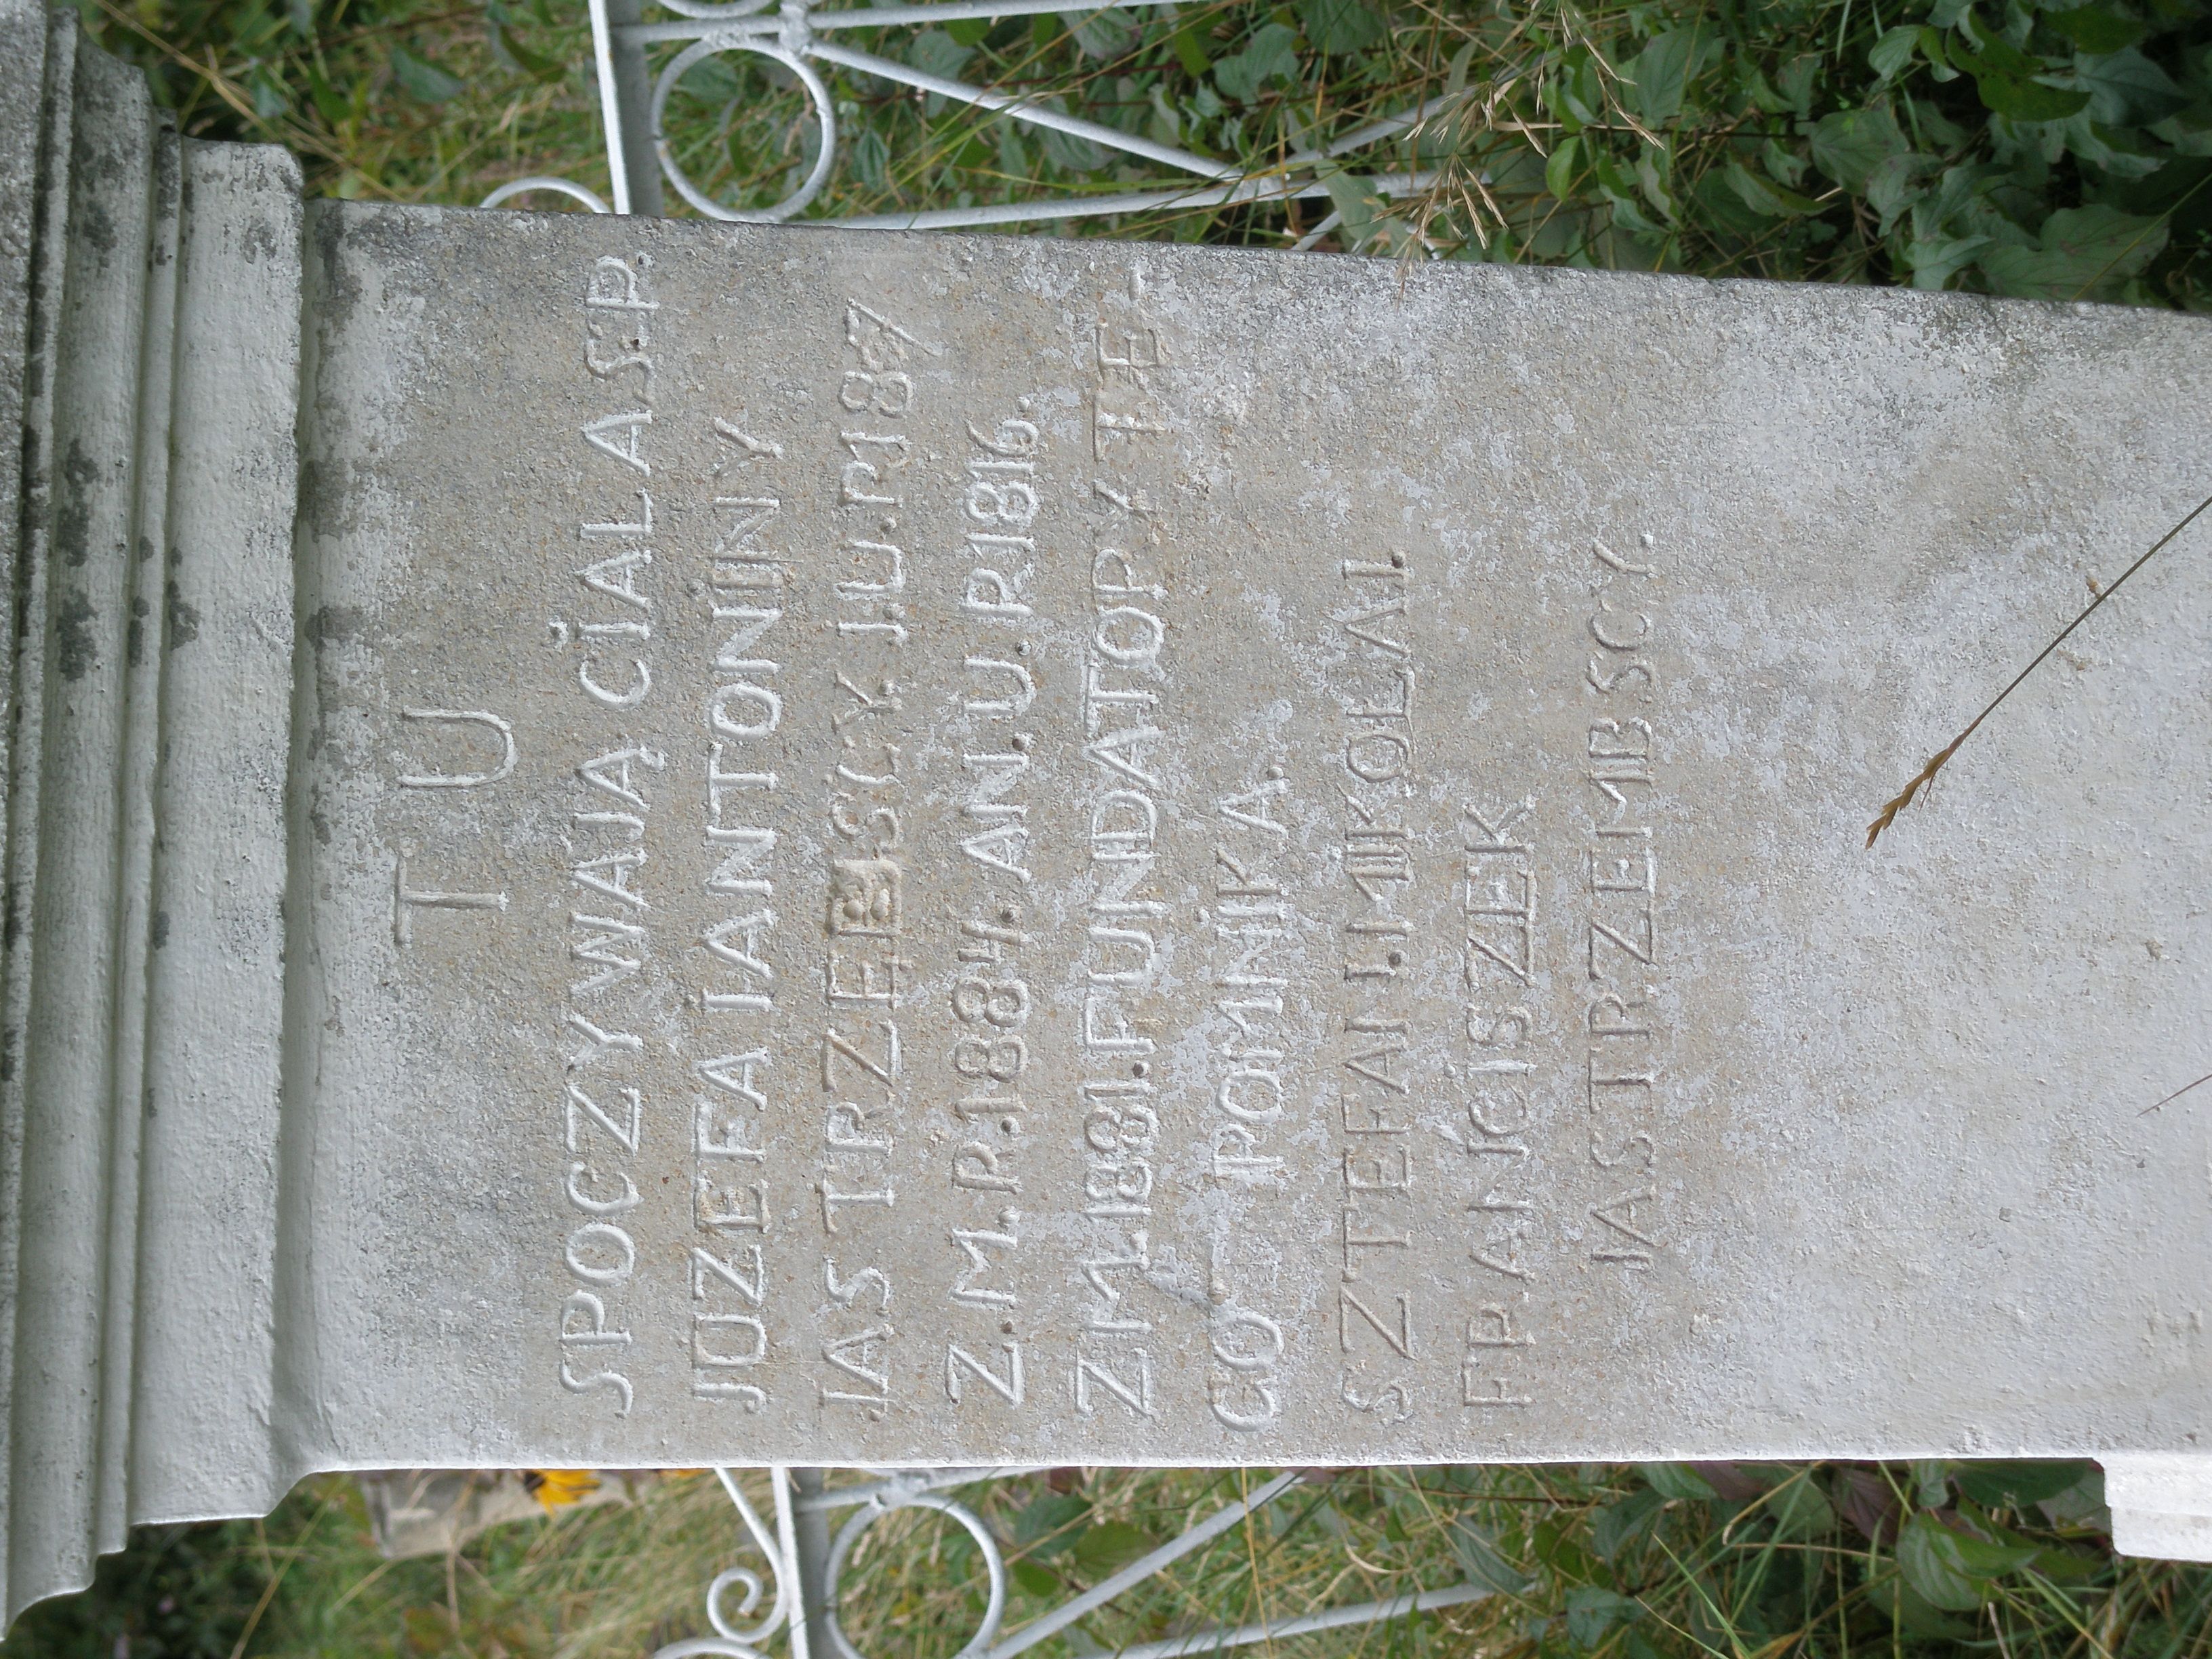 Gravestone inscription of Antonina and Józef Jastrzębski, as of 2006